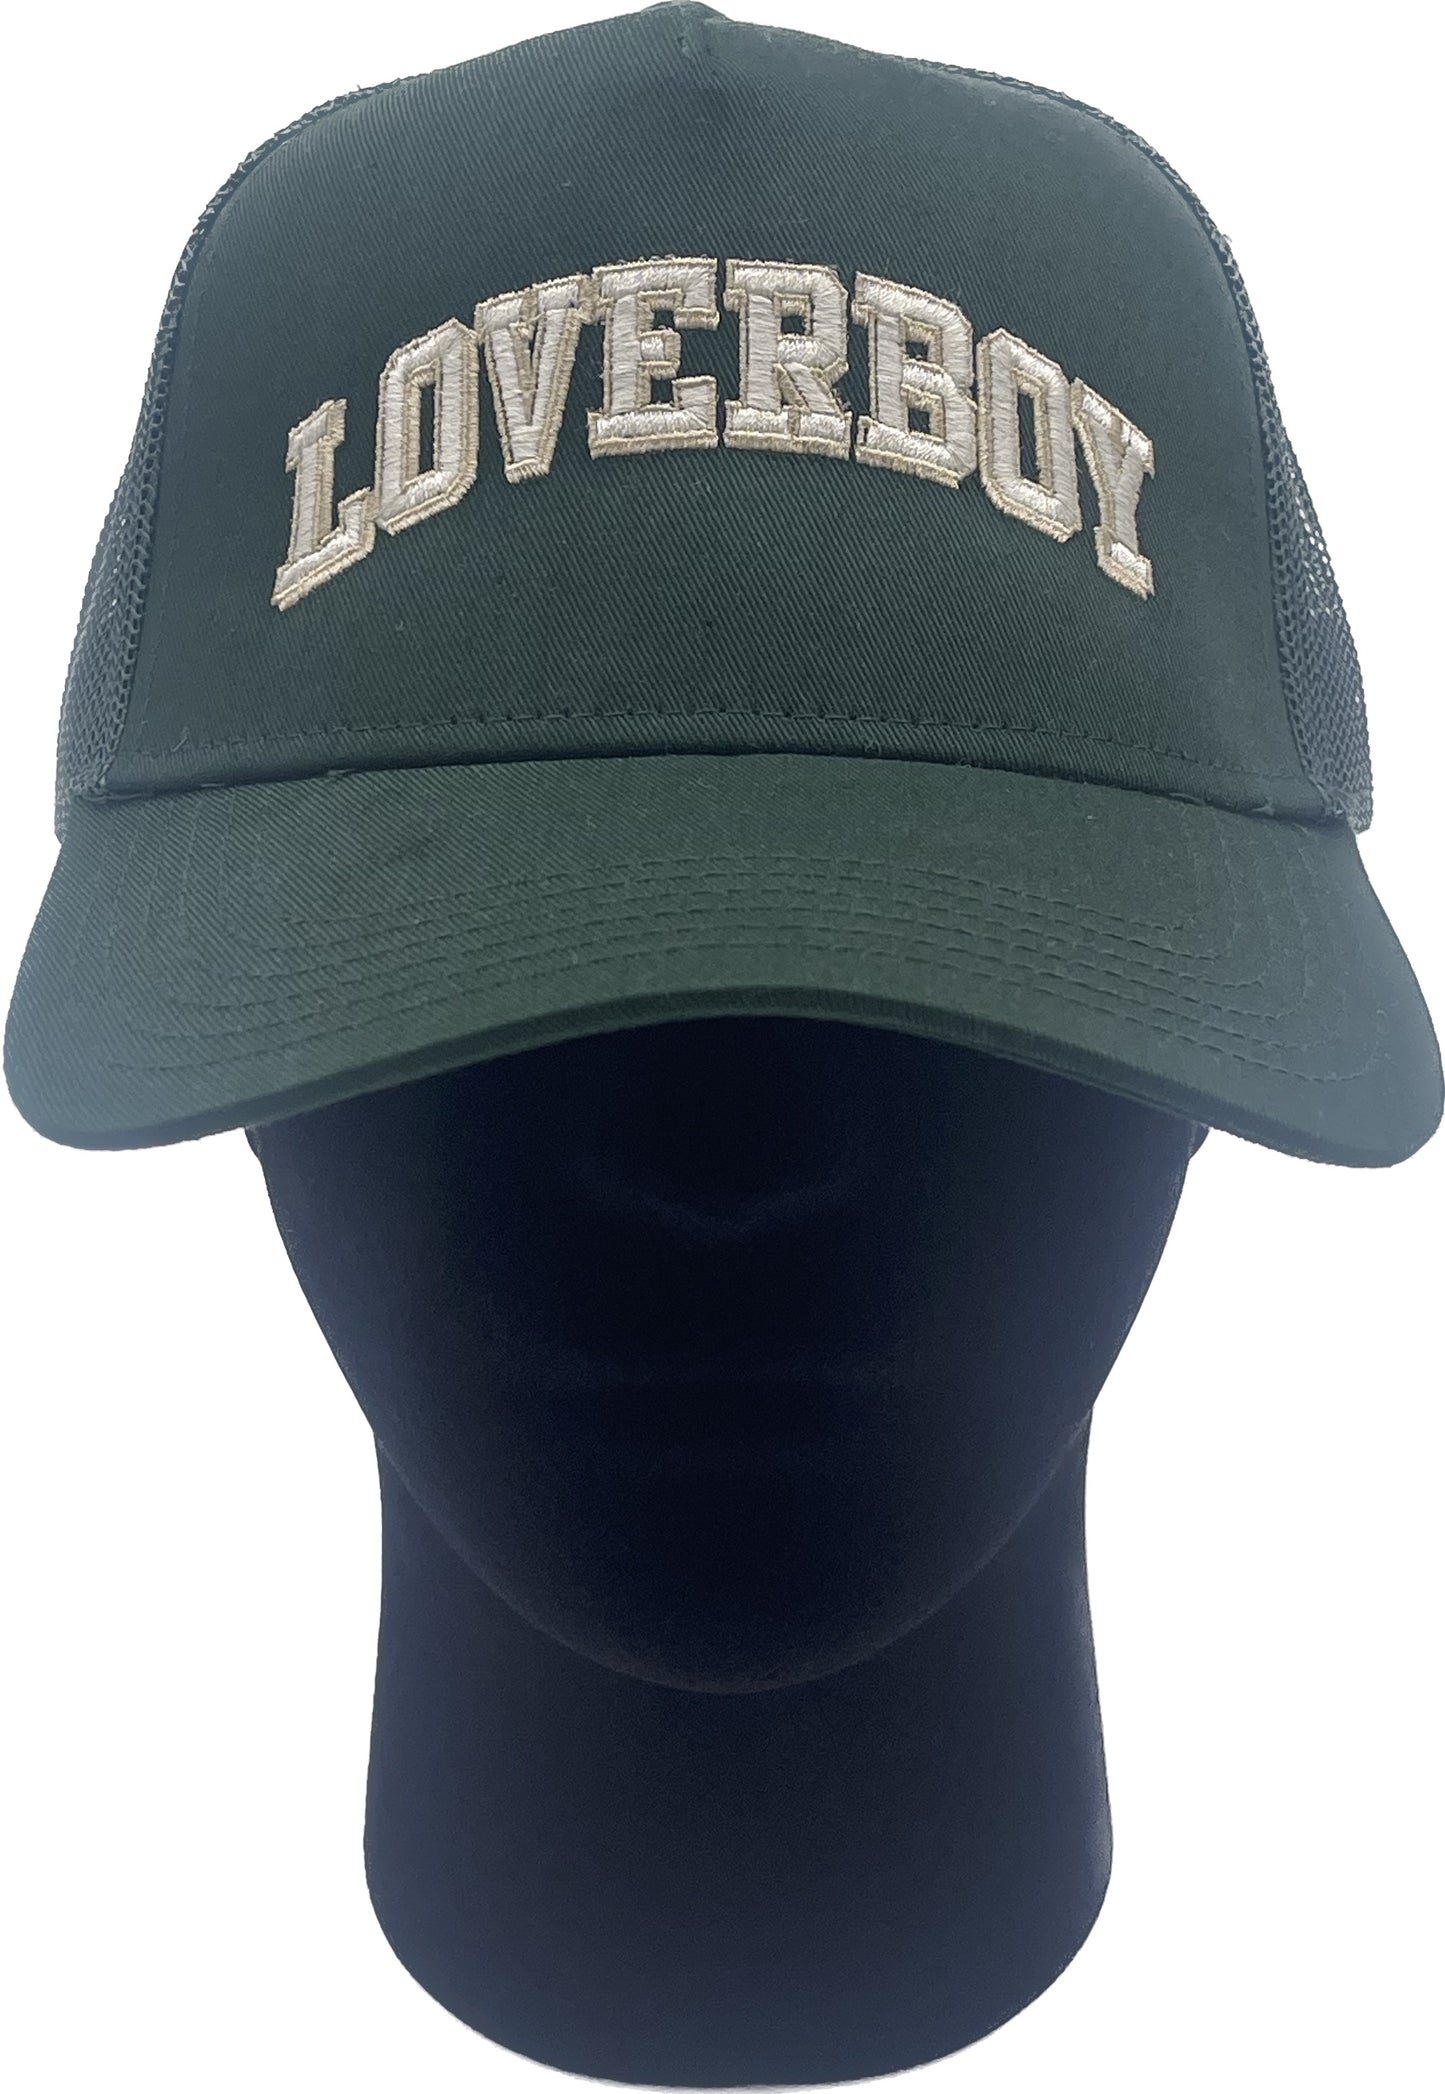 Loverboy Letterman Green Trucker Hat